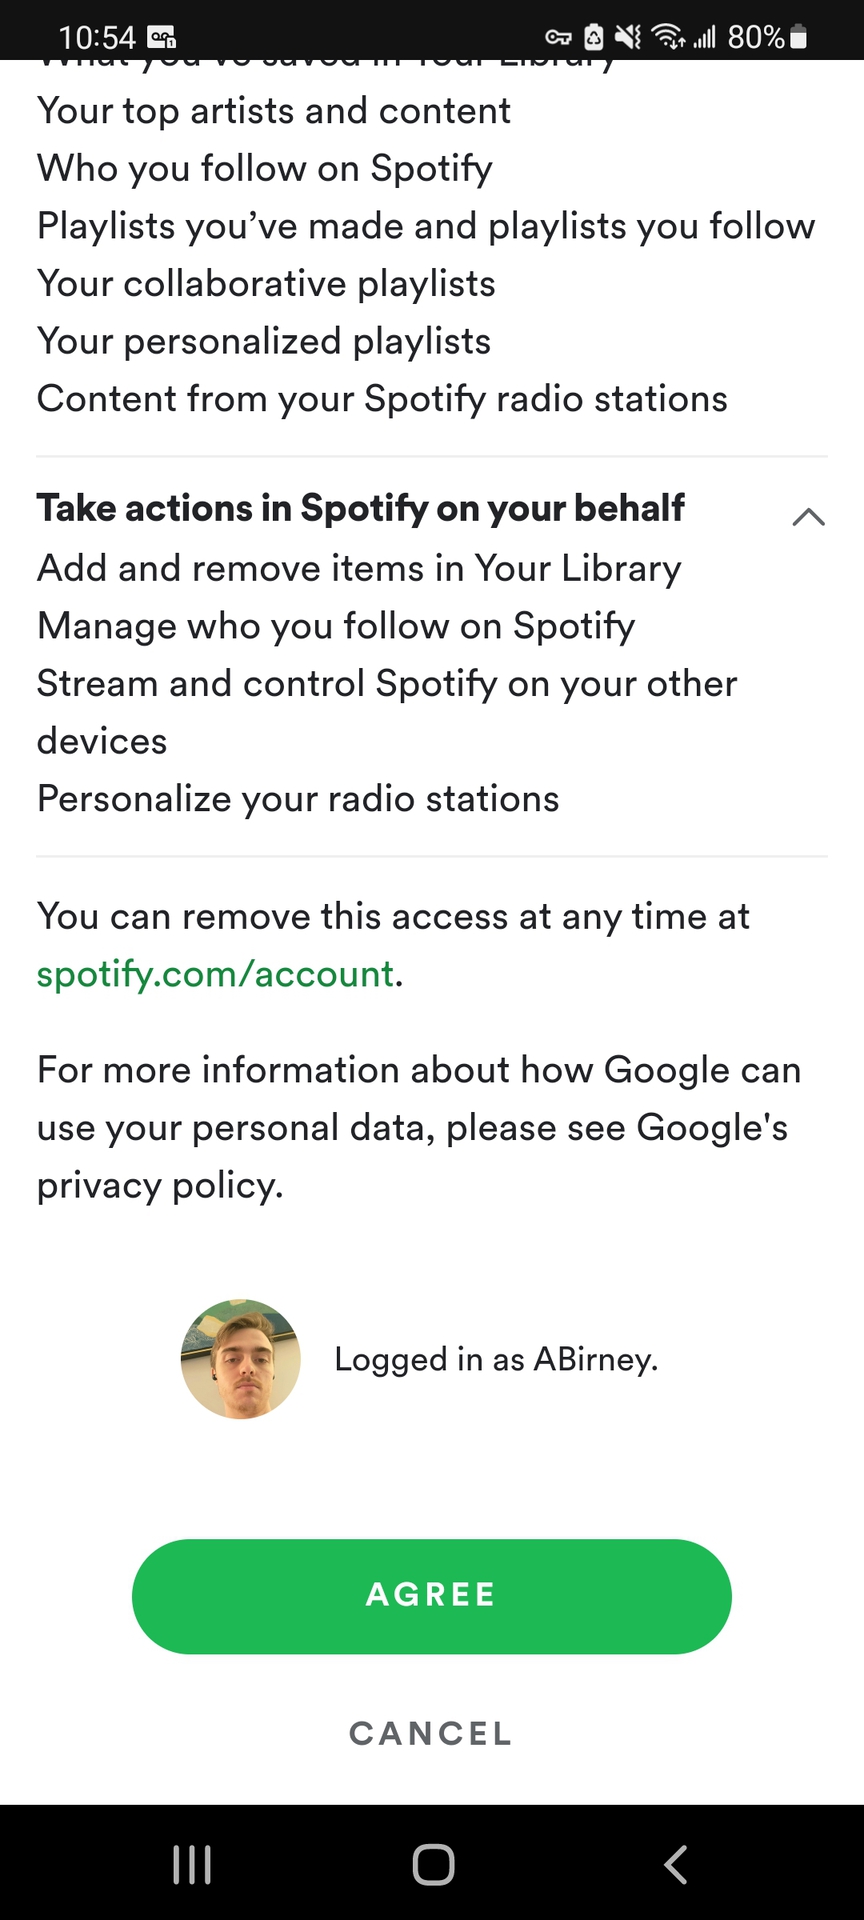 Bouton d'accord de Spotify Google Home